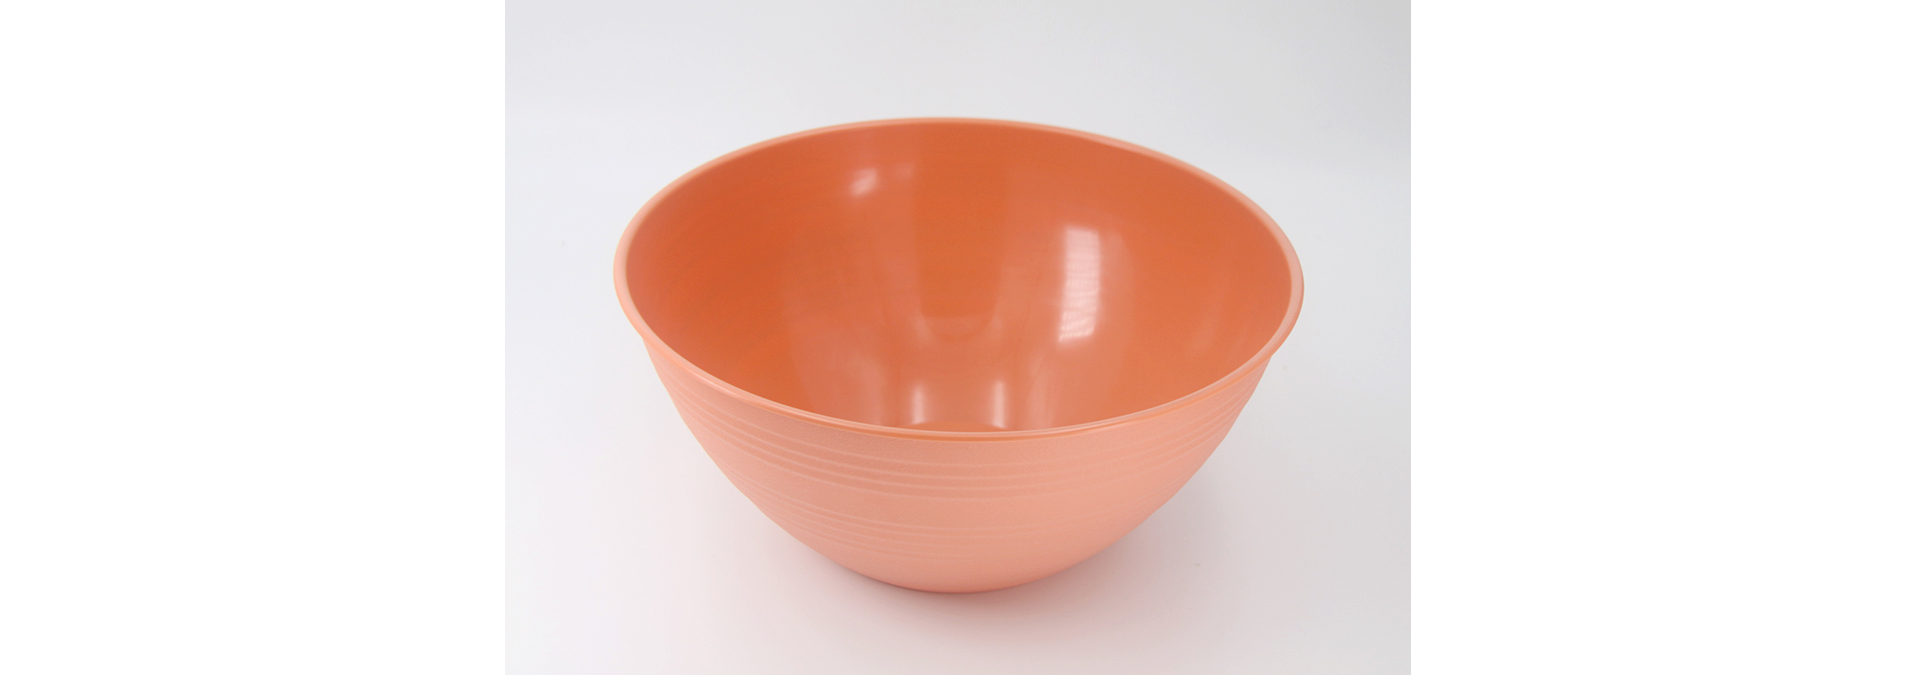 陶瓷纹沙拉碗